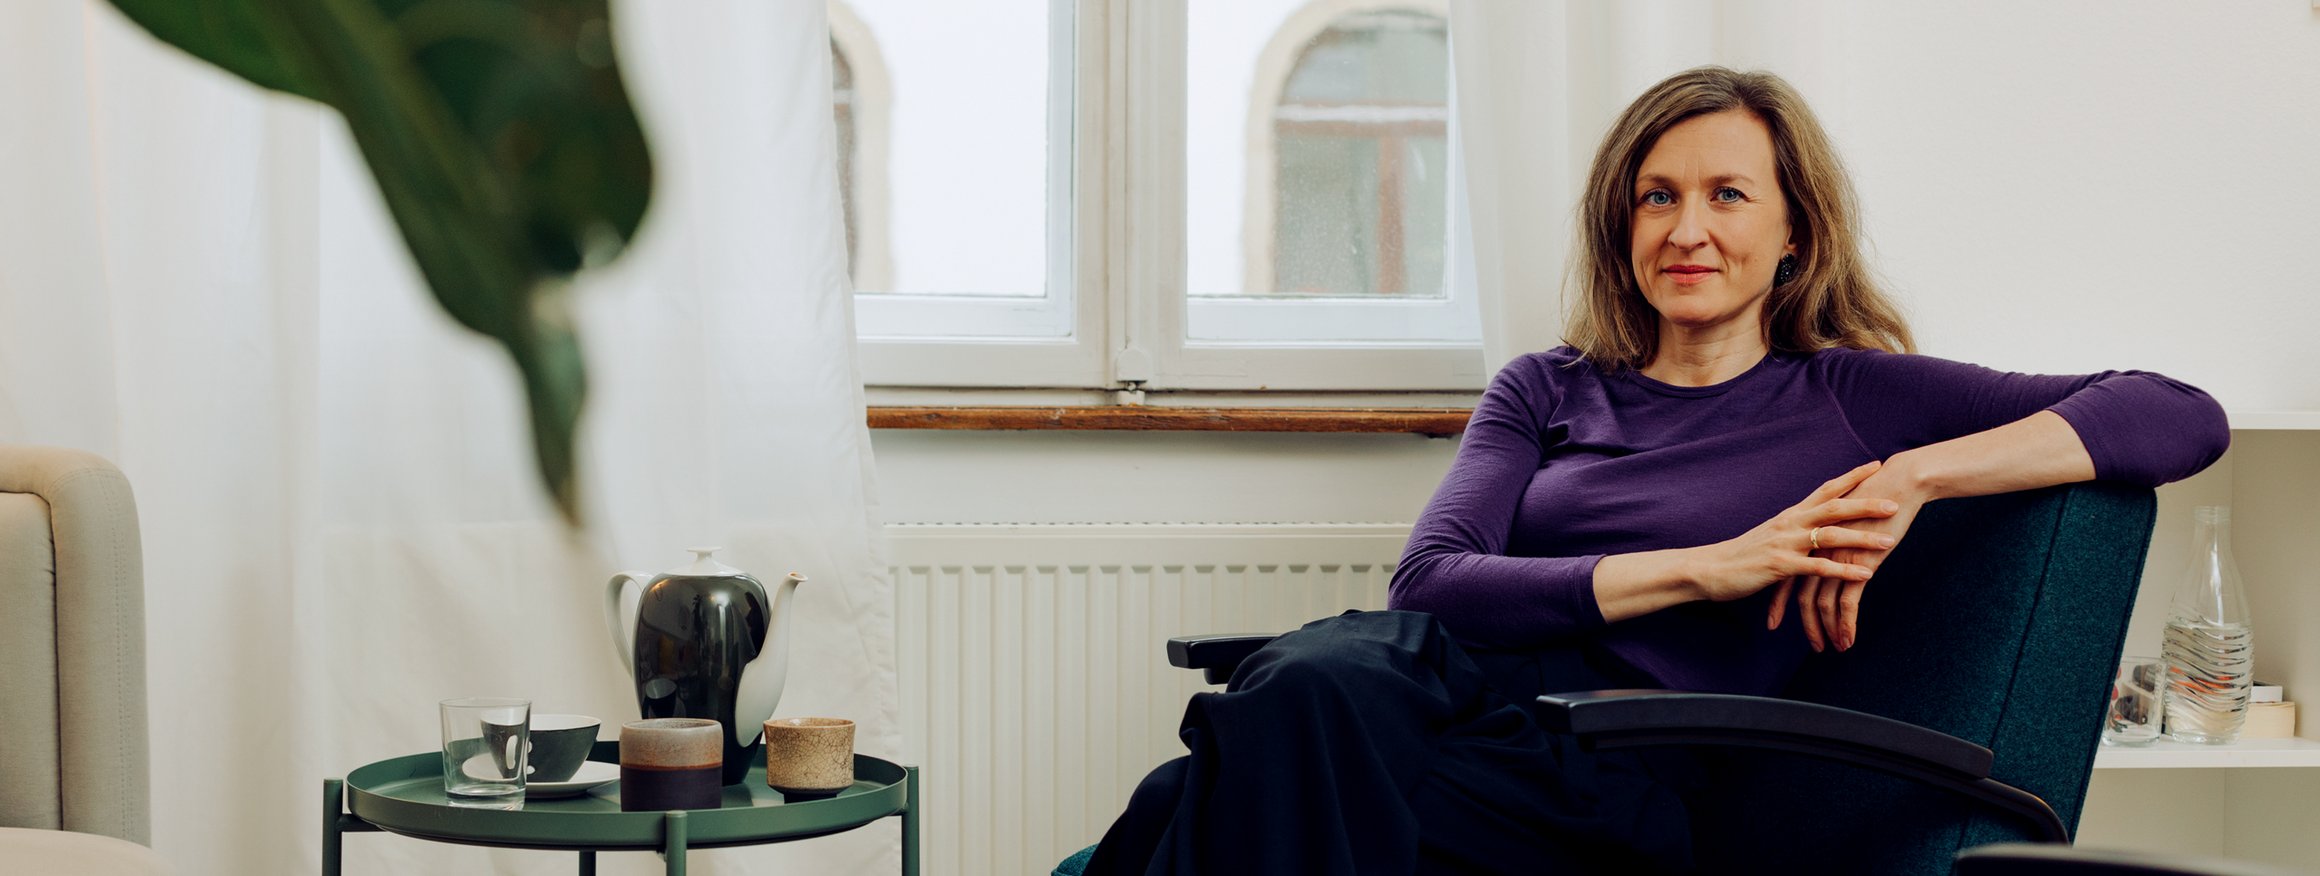 Die Therapeutin Angelika Eck sitzt ruhig lächelnd auf einem Sessel in ihrer Karlsruher Praxis, neben sich ein Tisch mit einer Teekanne, Tassen und einem Glas